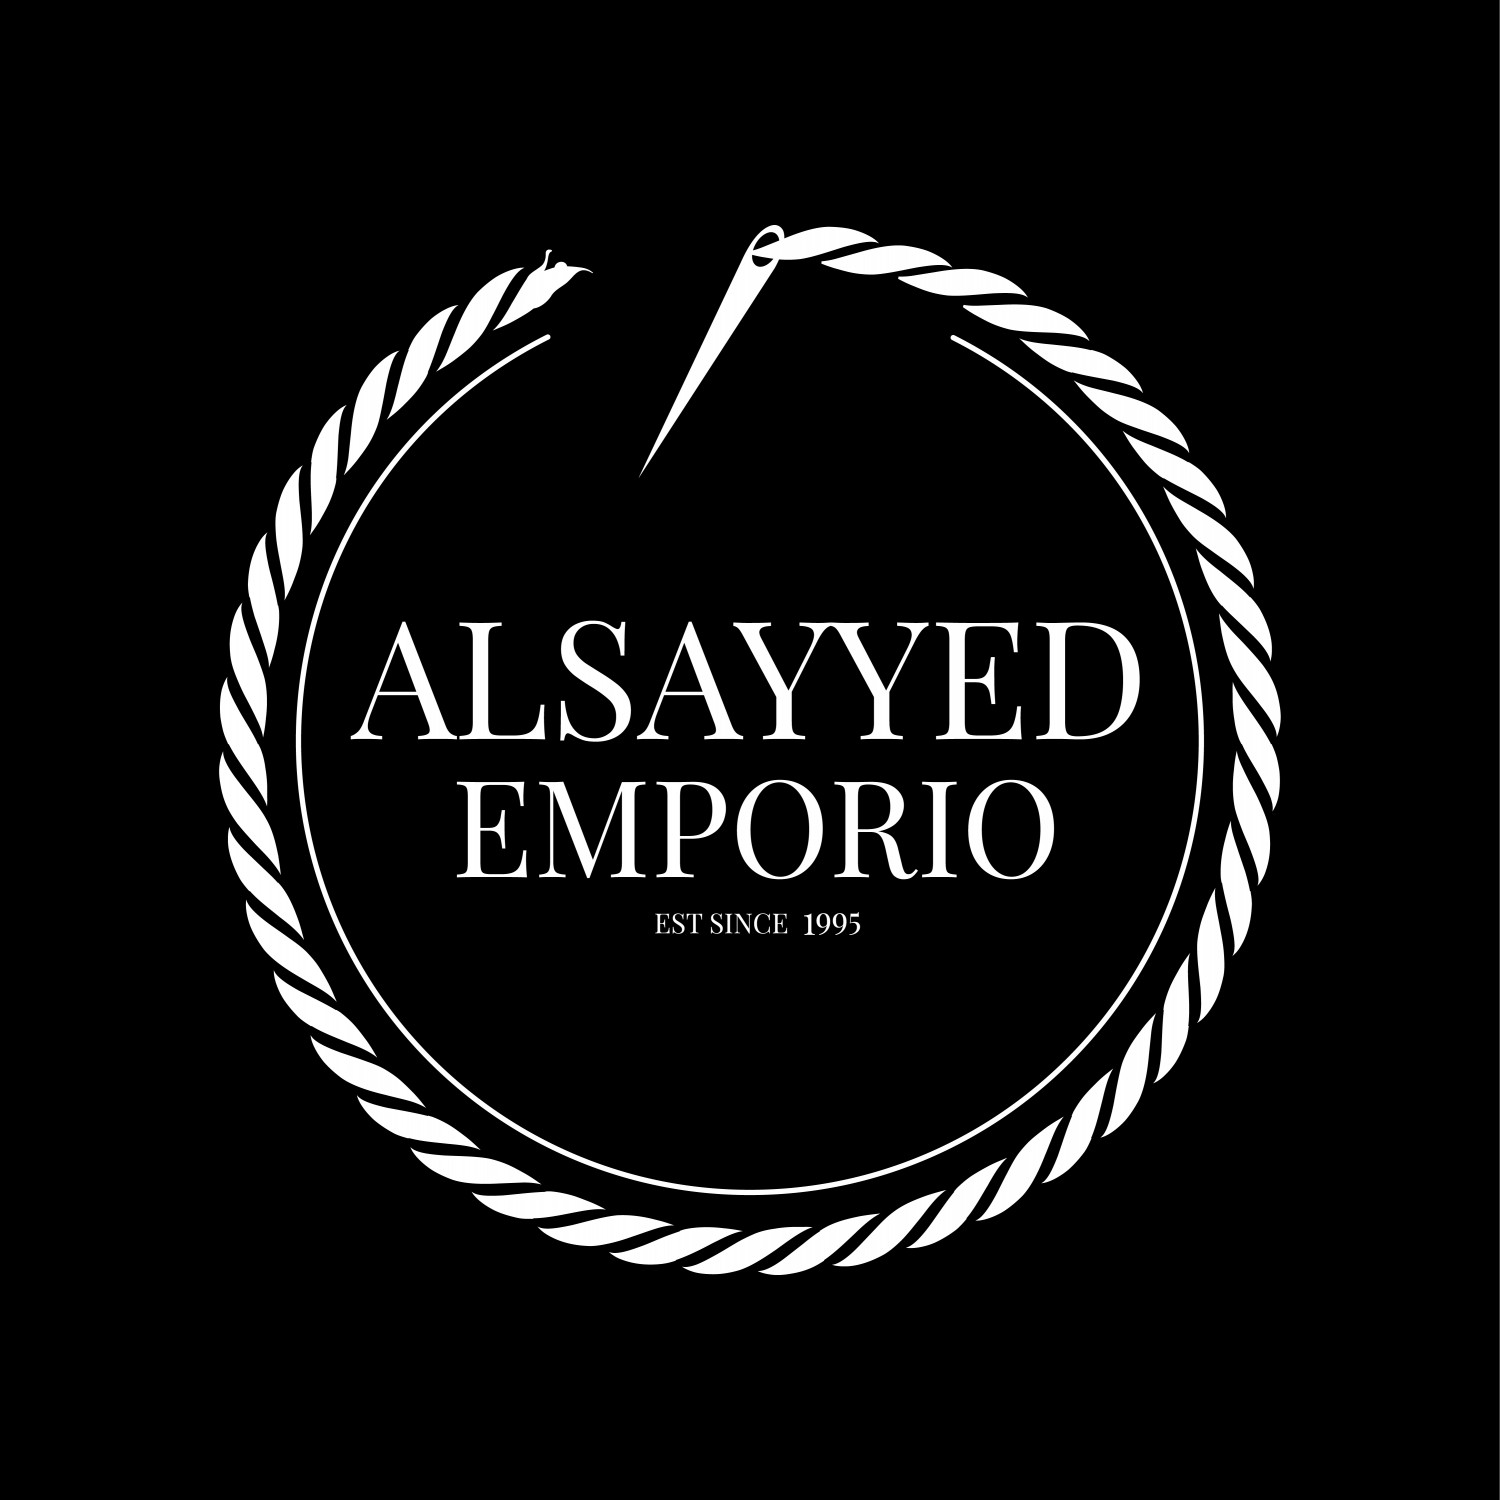 ALSAYYED EMPORIO